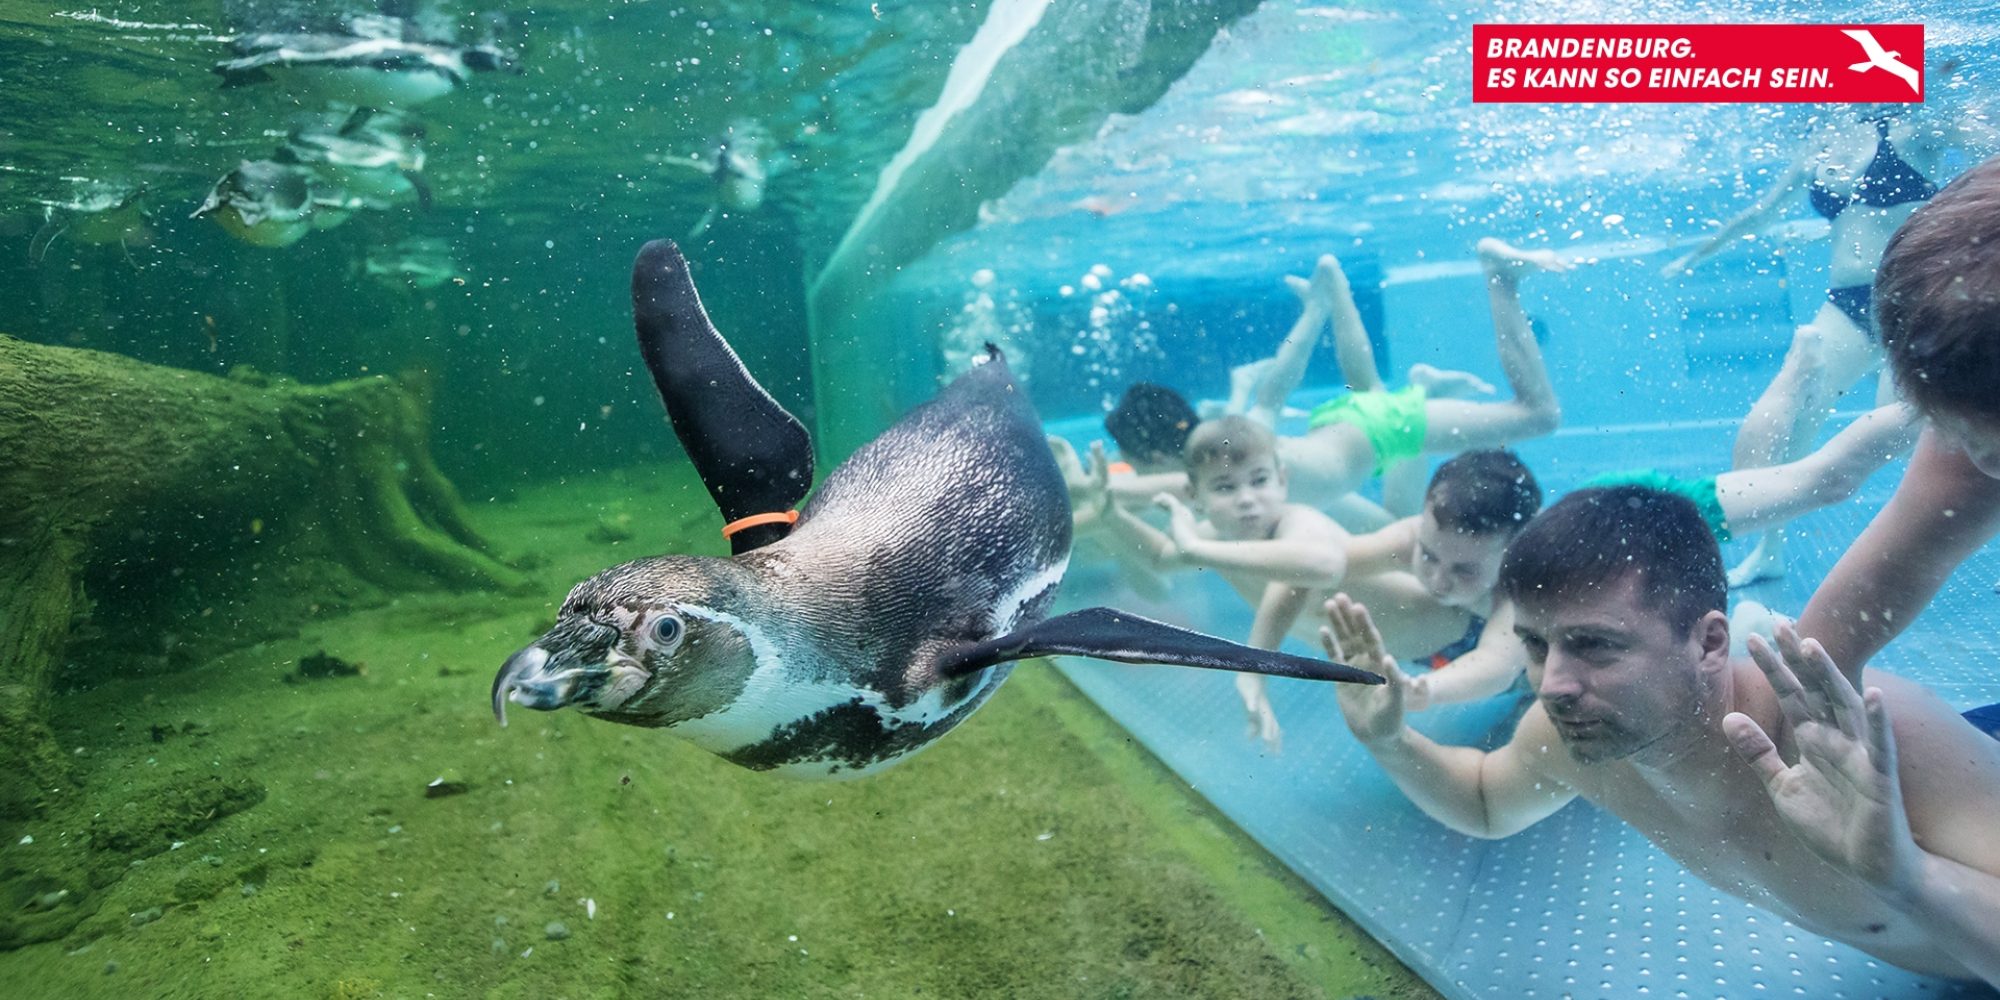 Menschen tauchen in einem Schwimmbad, an das durch eine Scheibe getrennt ein Aquarium anschließt, in welchem ein Pinguin taucht.